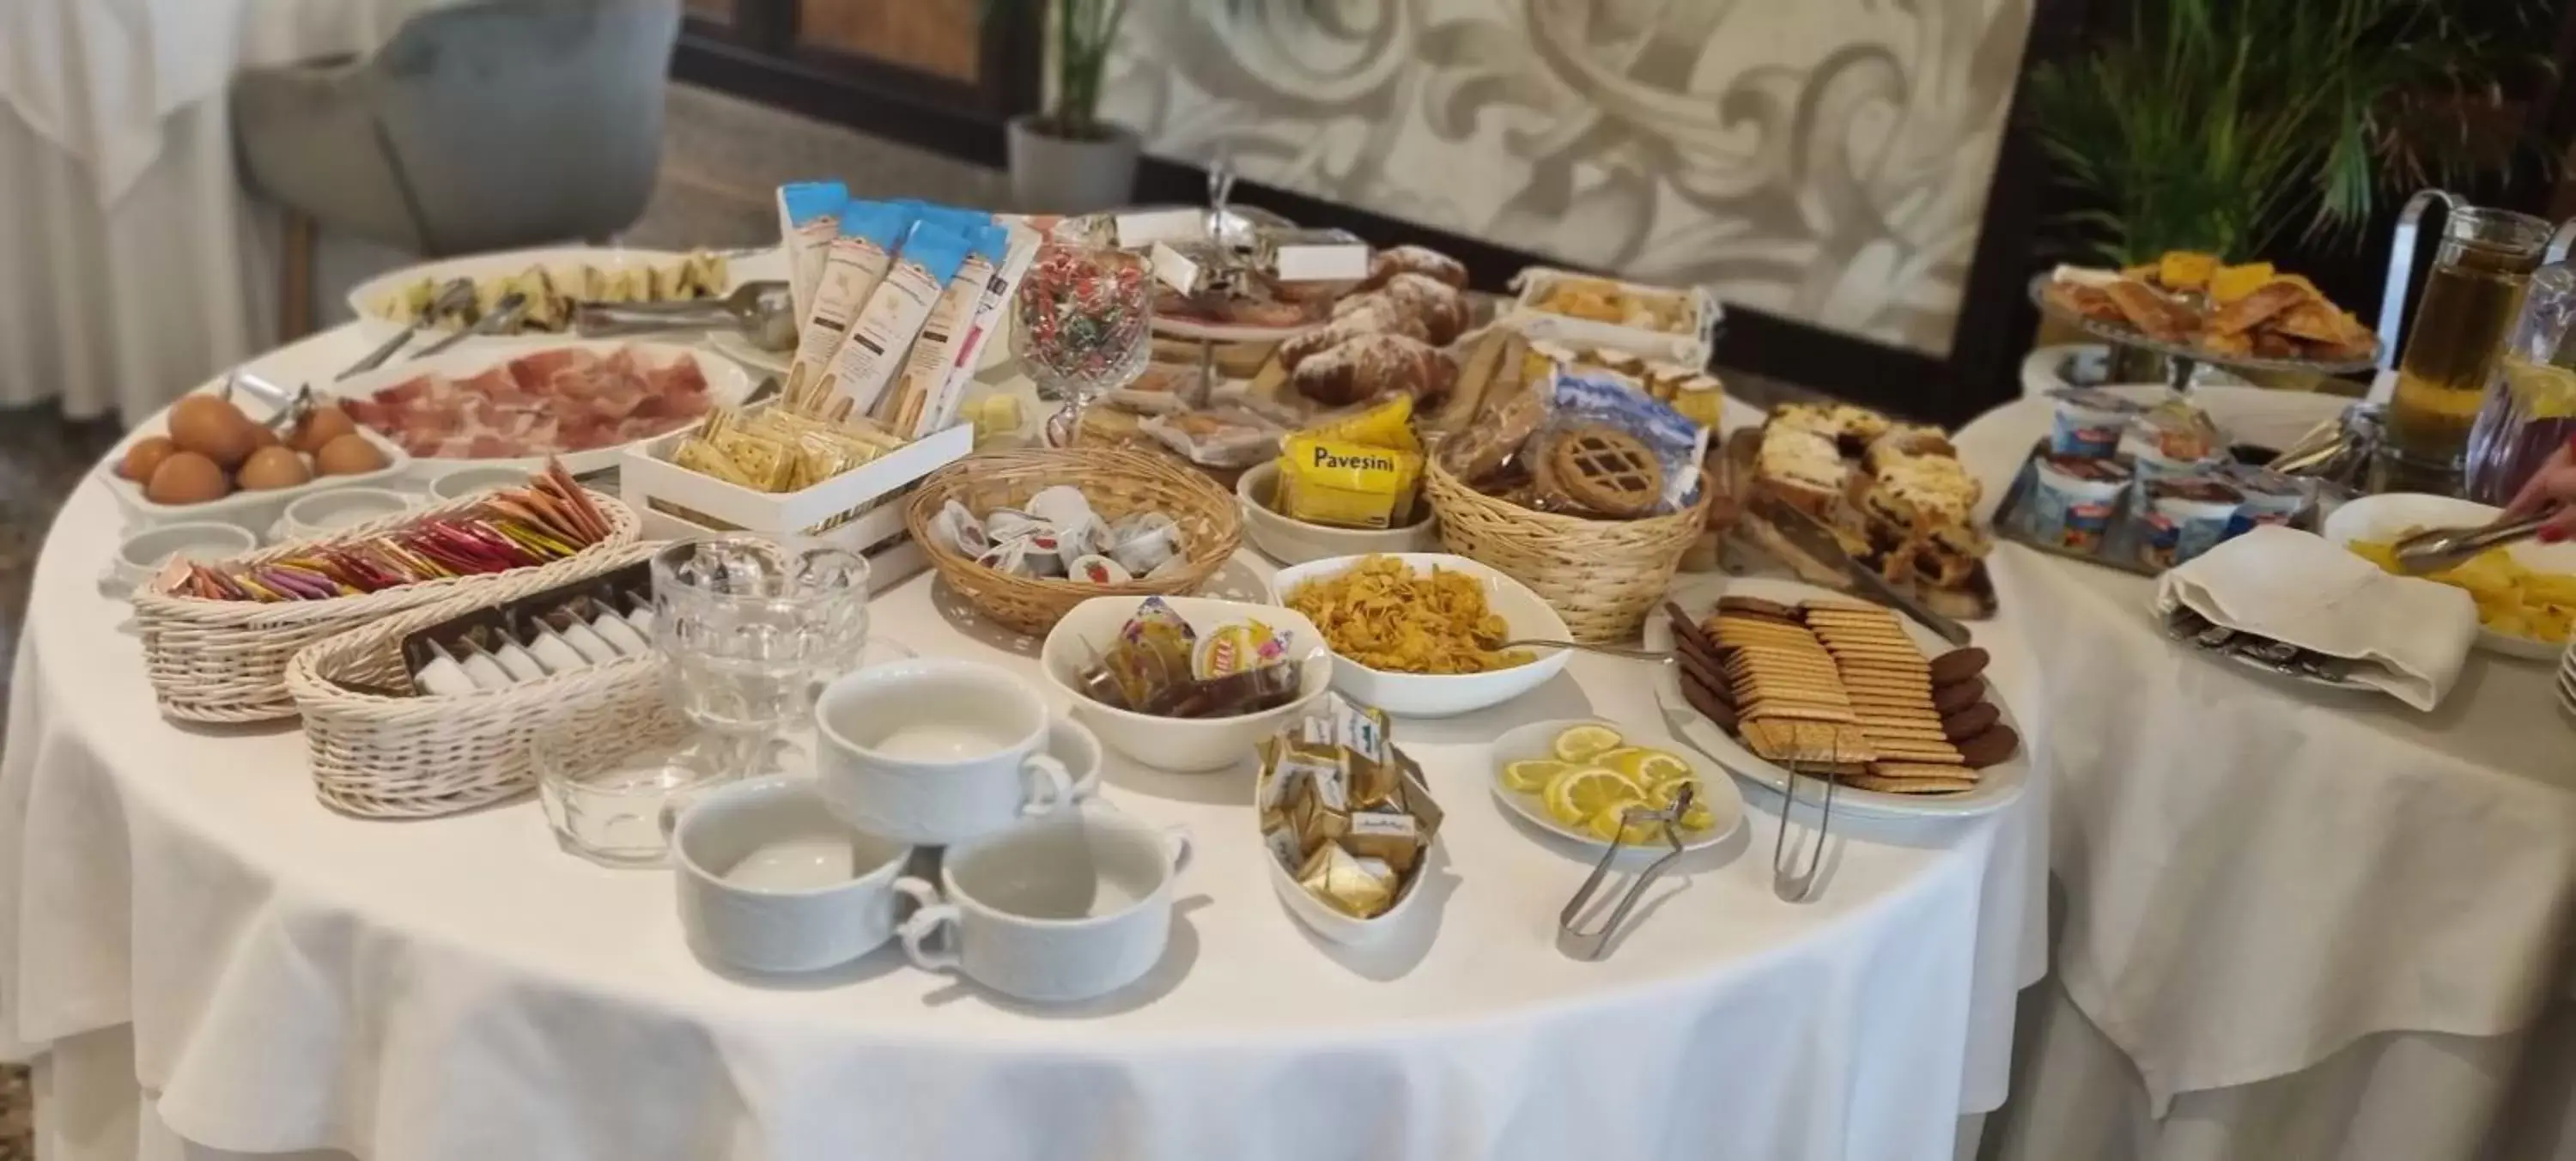 Breakfast in Villa Regina Margherita